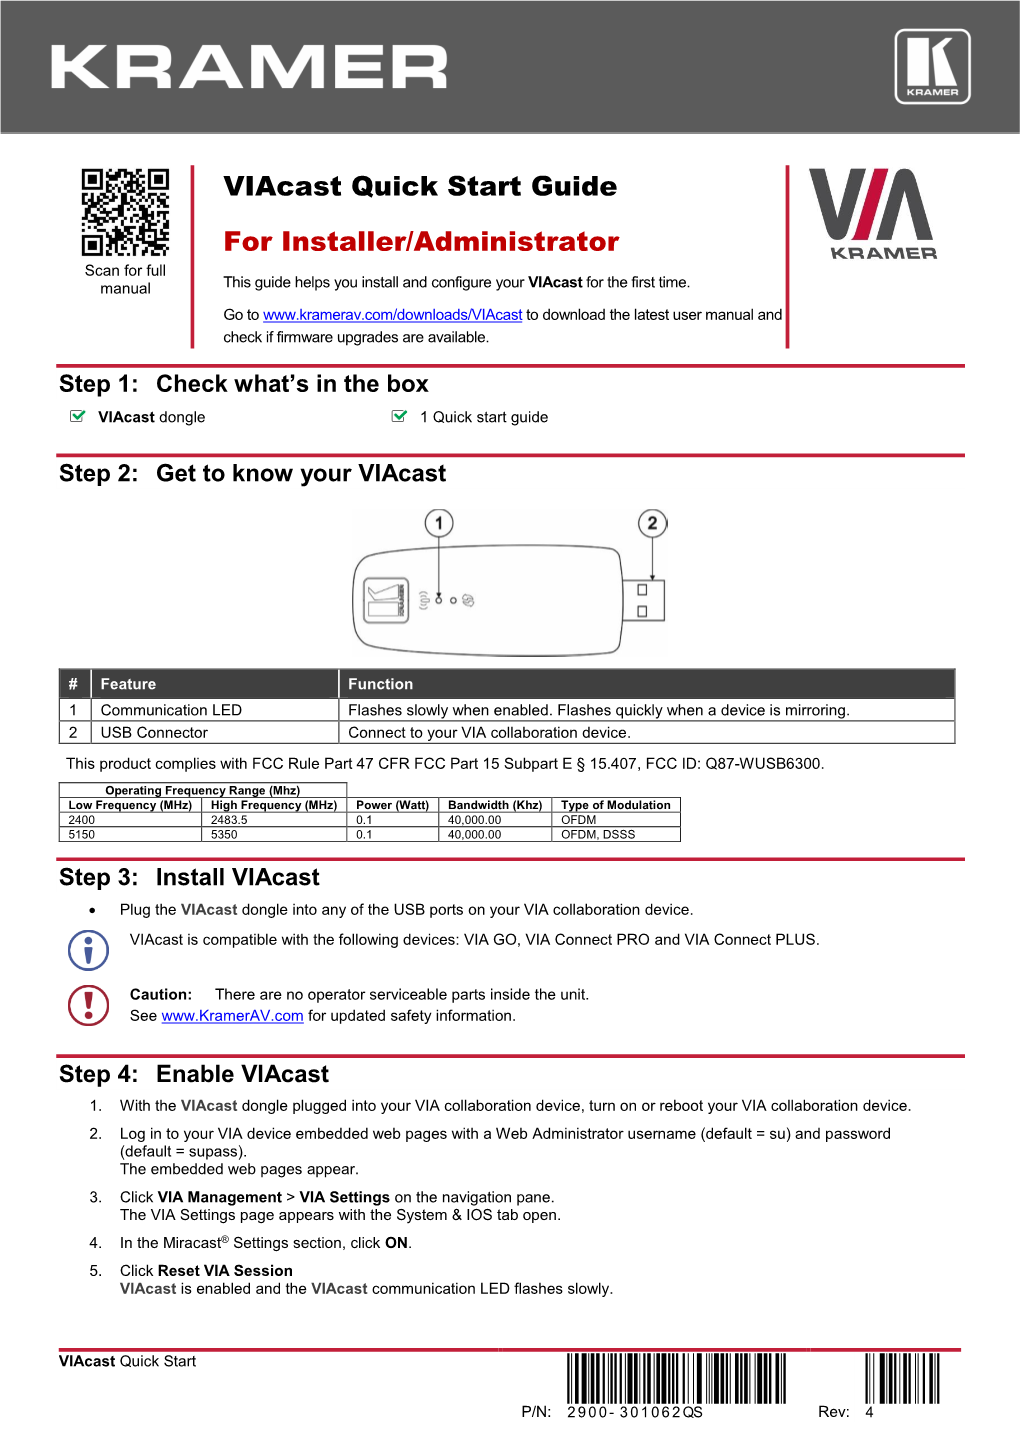 Viacast Quick Start Guide for Installer/Administrator